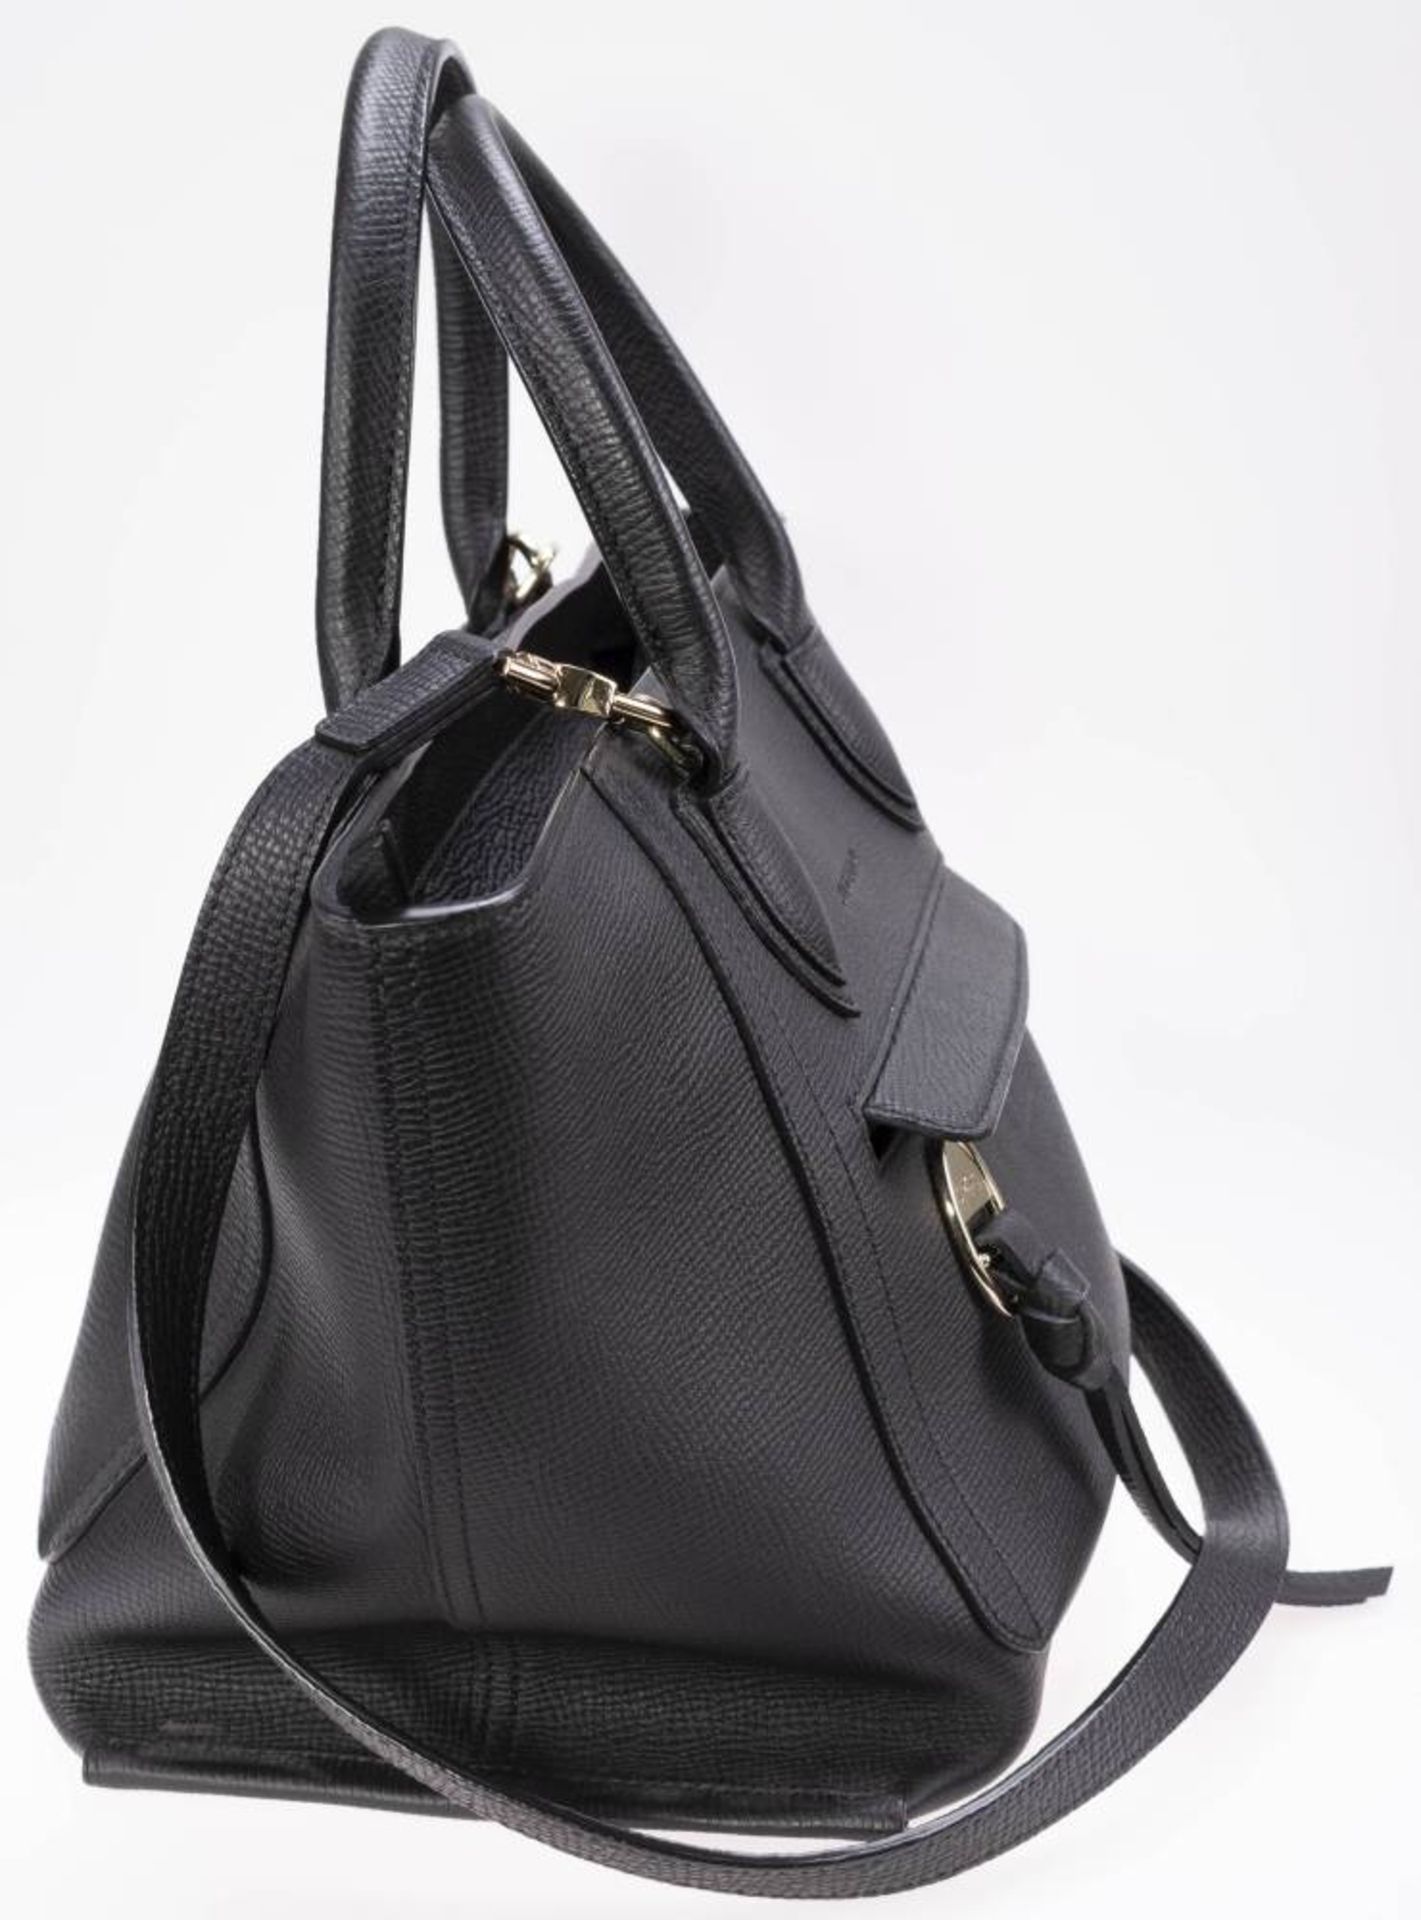 Longchamp Shopper, schwarzes Leder, goldfarbenes Metall, Außentasche mit Reißverschluss, innen - Bild 4 aus 6